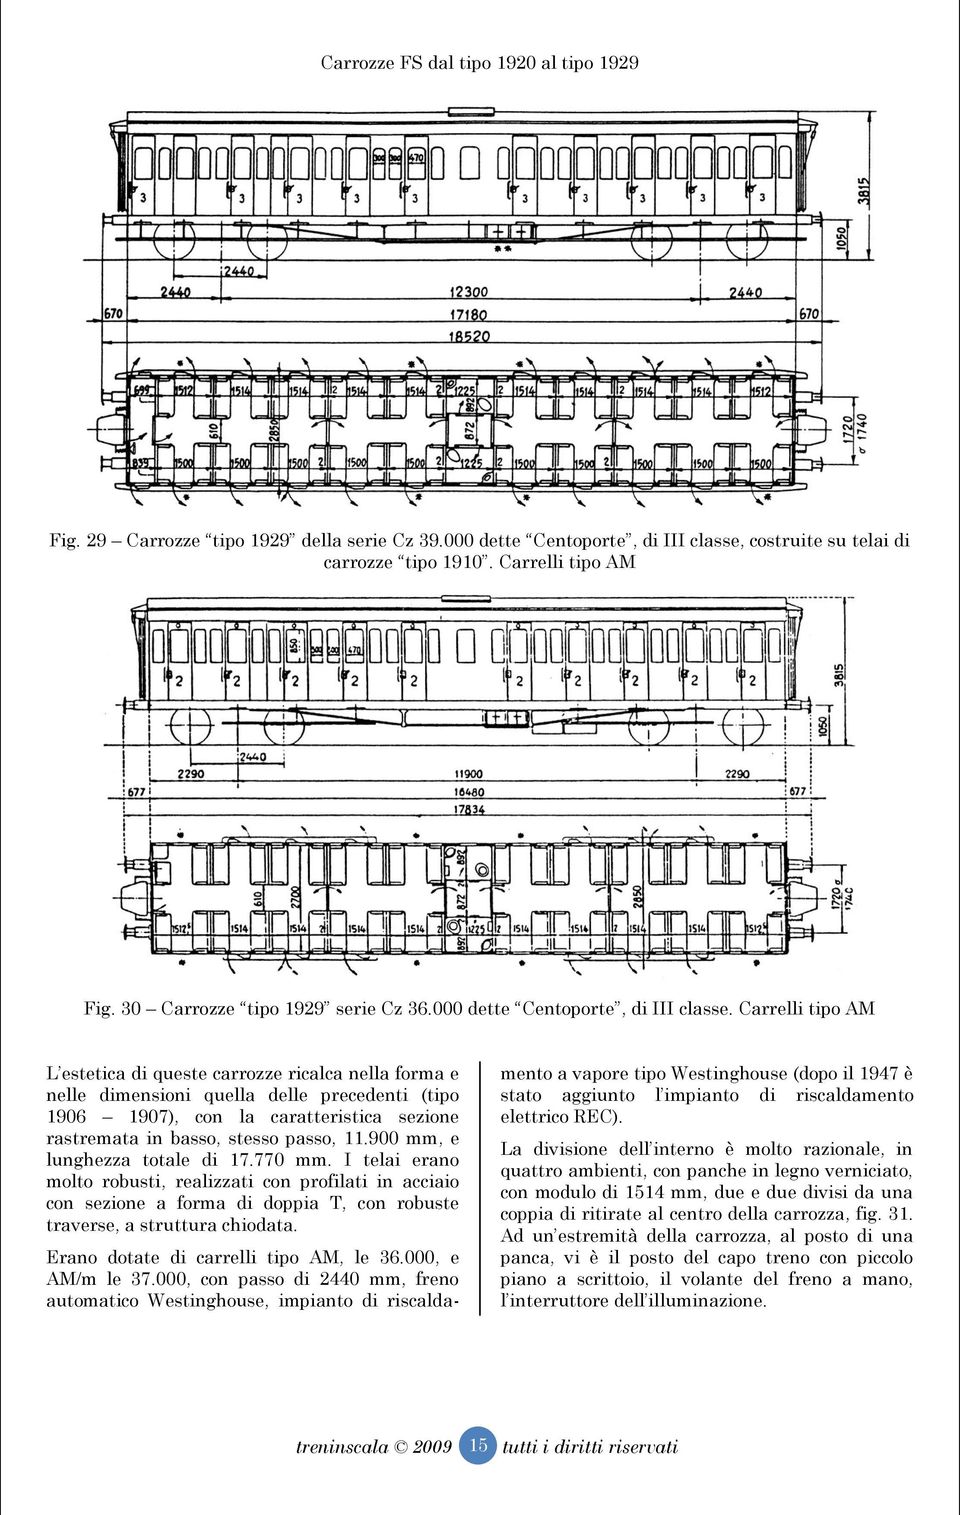 Carrelli tipo AM L estetica di queste carrozze ricalca nella forma e nelle dimensioni quella delle precedenti (tipo 1906 1907), con la caratteristica sezione rastremata in basso, stesso passo, 11.